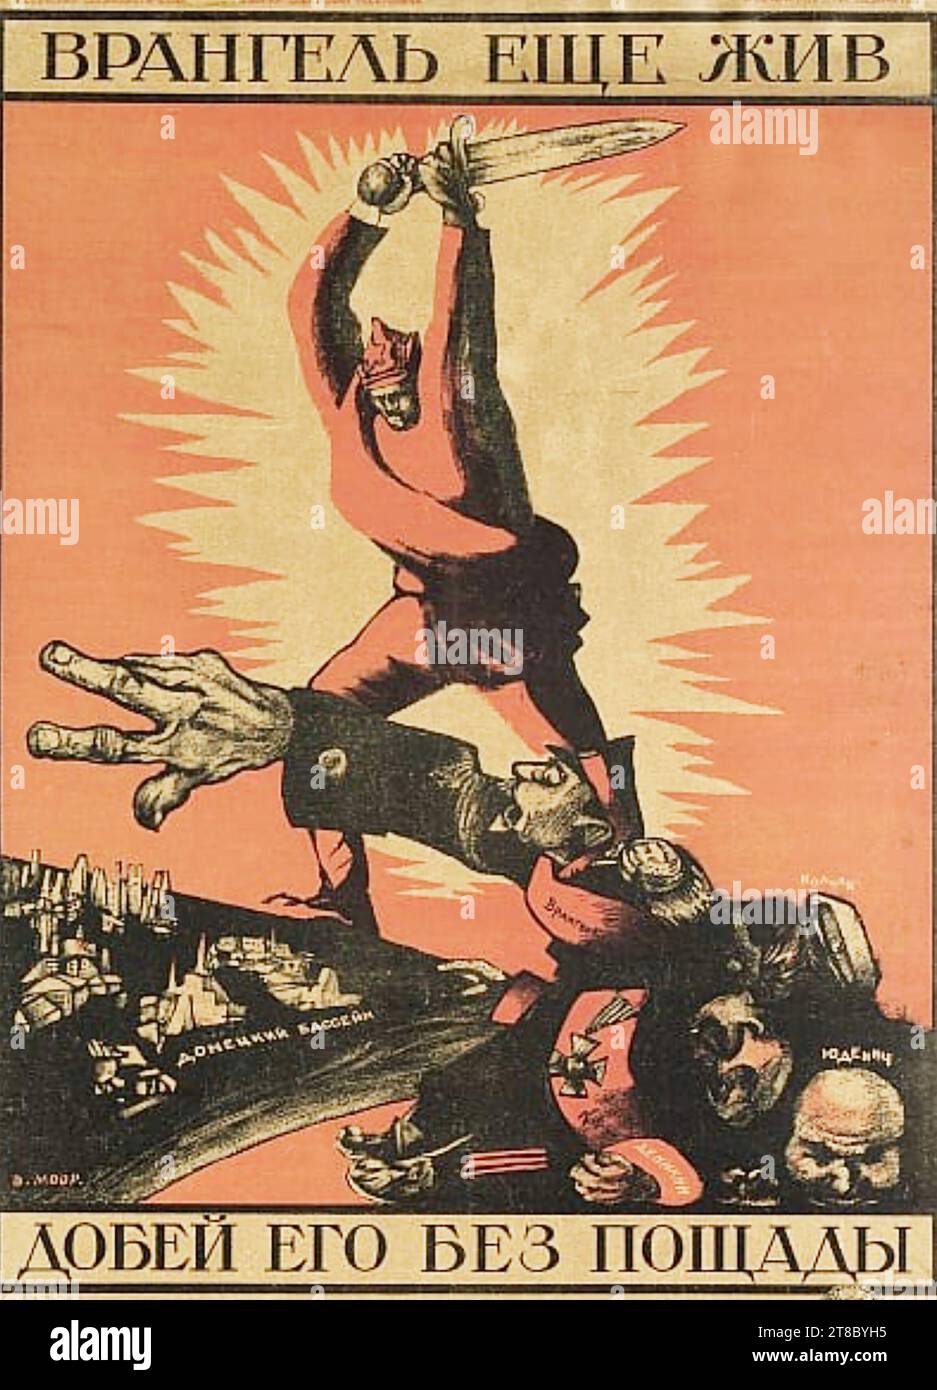 DMITRY MOOR (1883-1946) artiste et concepteur d'affiches russe. 'Wrangel vit toujours. Finissons-le !' Une référence à Pyotr Wrangel un commandant aniti-bolchevique dans la guerre civile russe. Banque D'Images